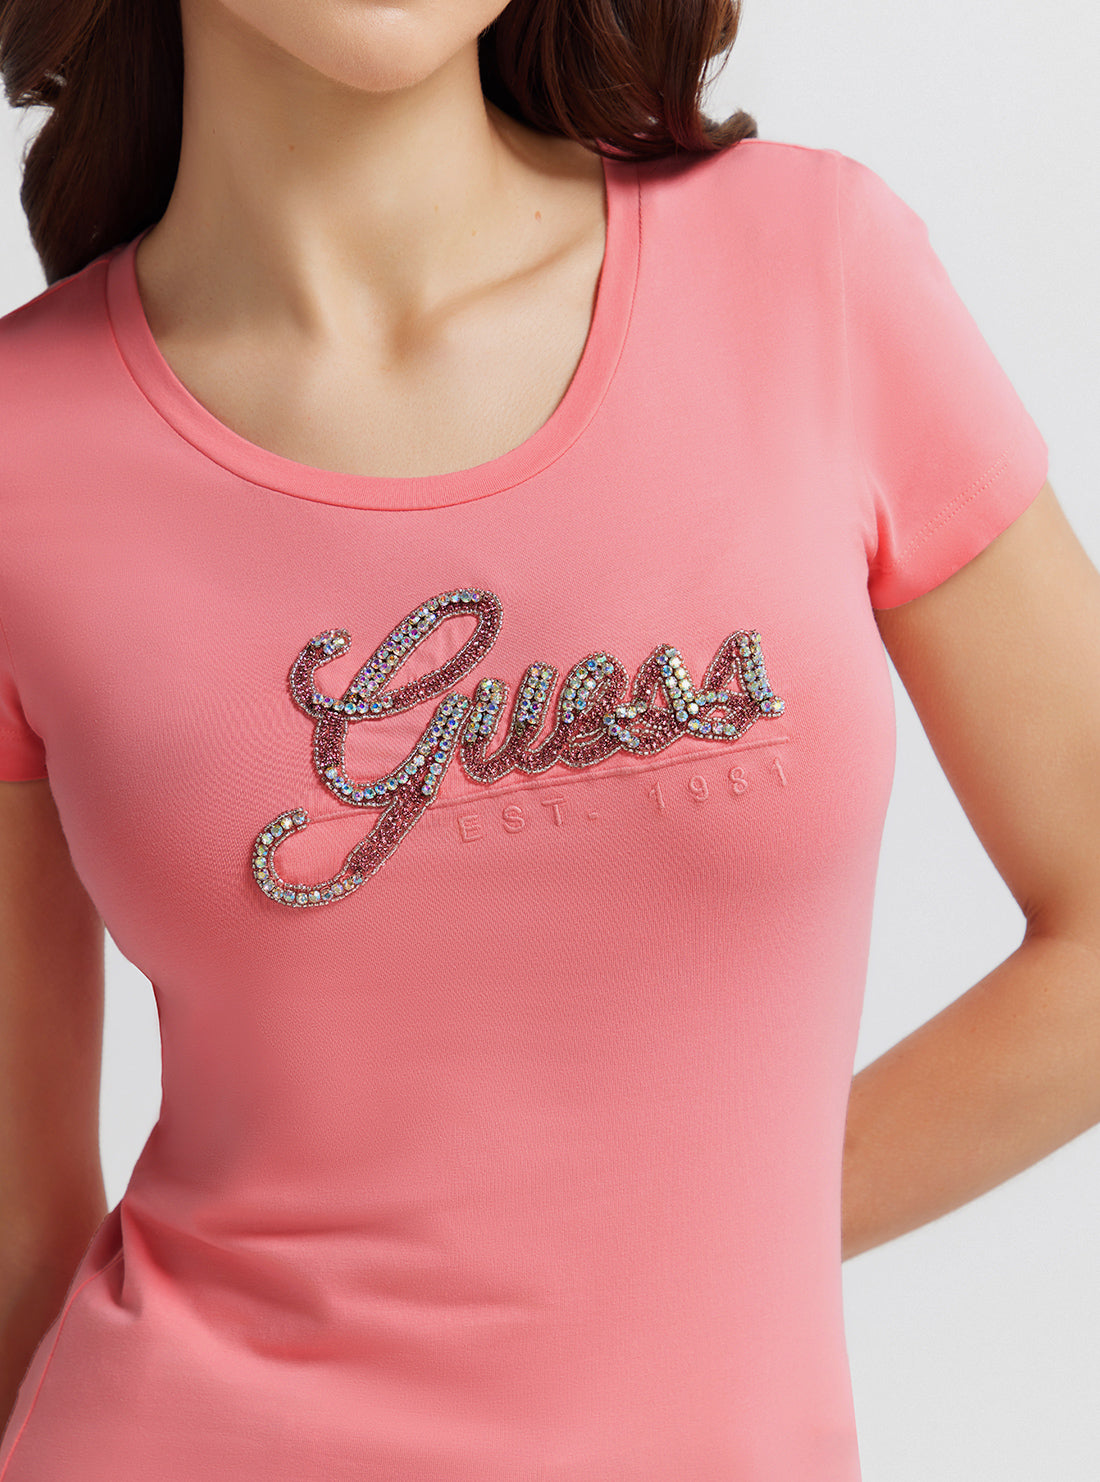 Eco Pink Rhinestone Logo T-Shirt | GUESS Women's | detail view